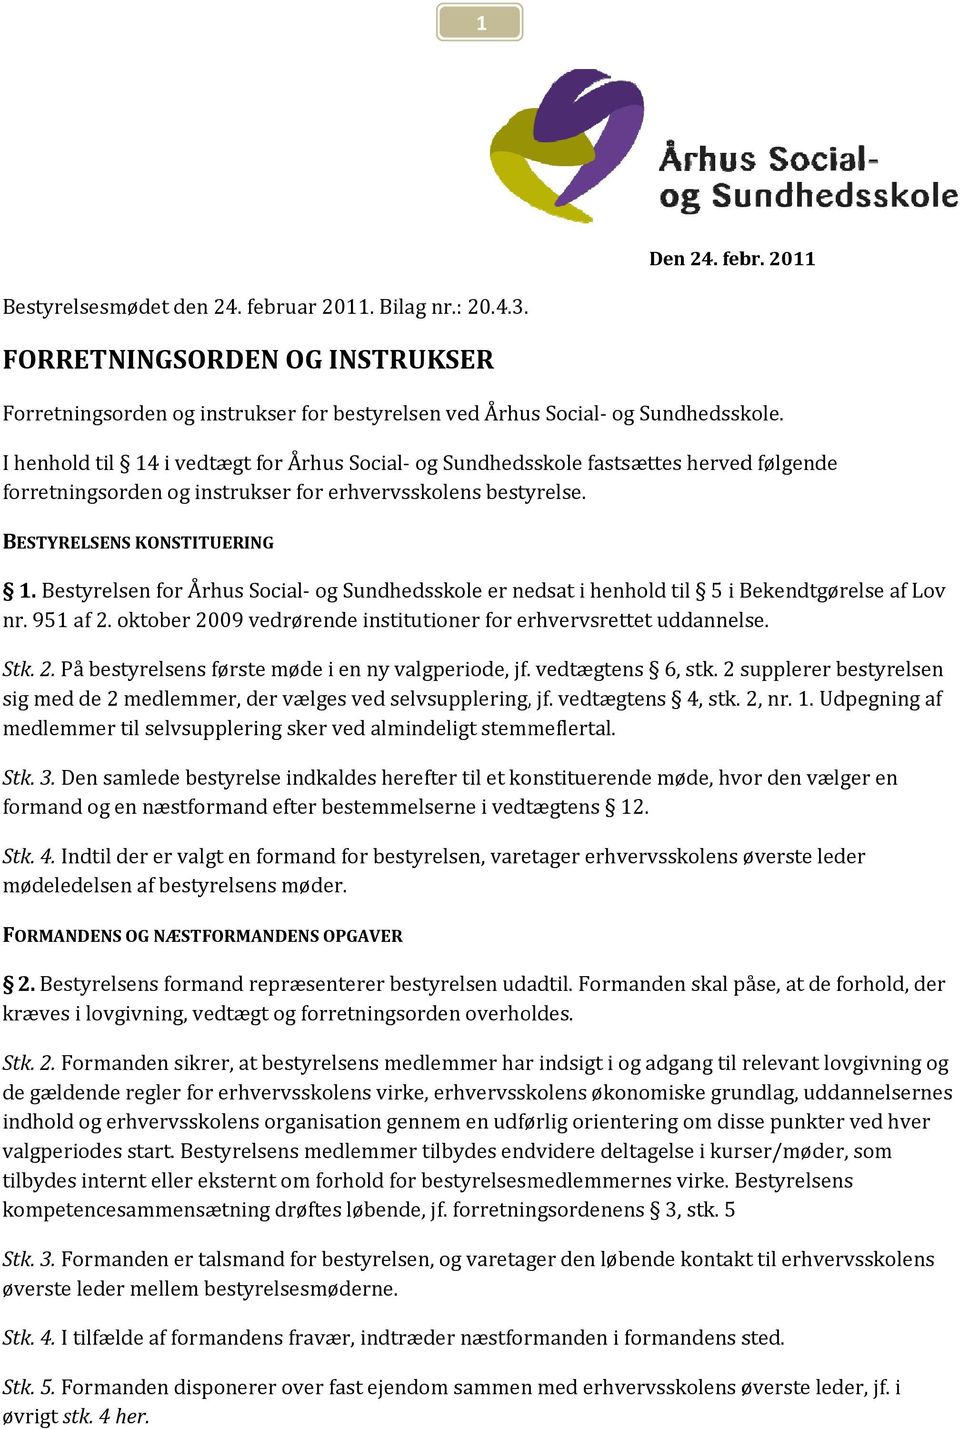 Bestyrelsen for Århus Social og Sundhedsskole er nedsat i henhold til 5 i Bekendtgørelse af Lov nr. 951 af 2. oktober 2009 vedrørende institutioner for erhvervsrettet uddannelse. Stk. 2. På bestyrelsens første møde i en ny valgperiode, jf.